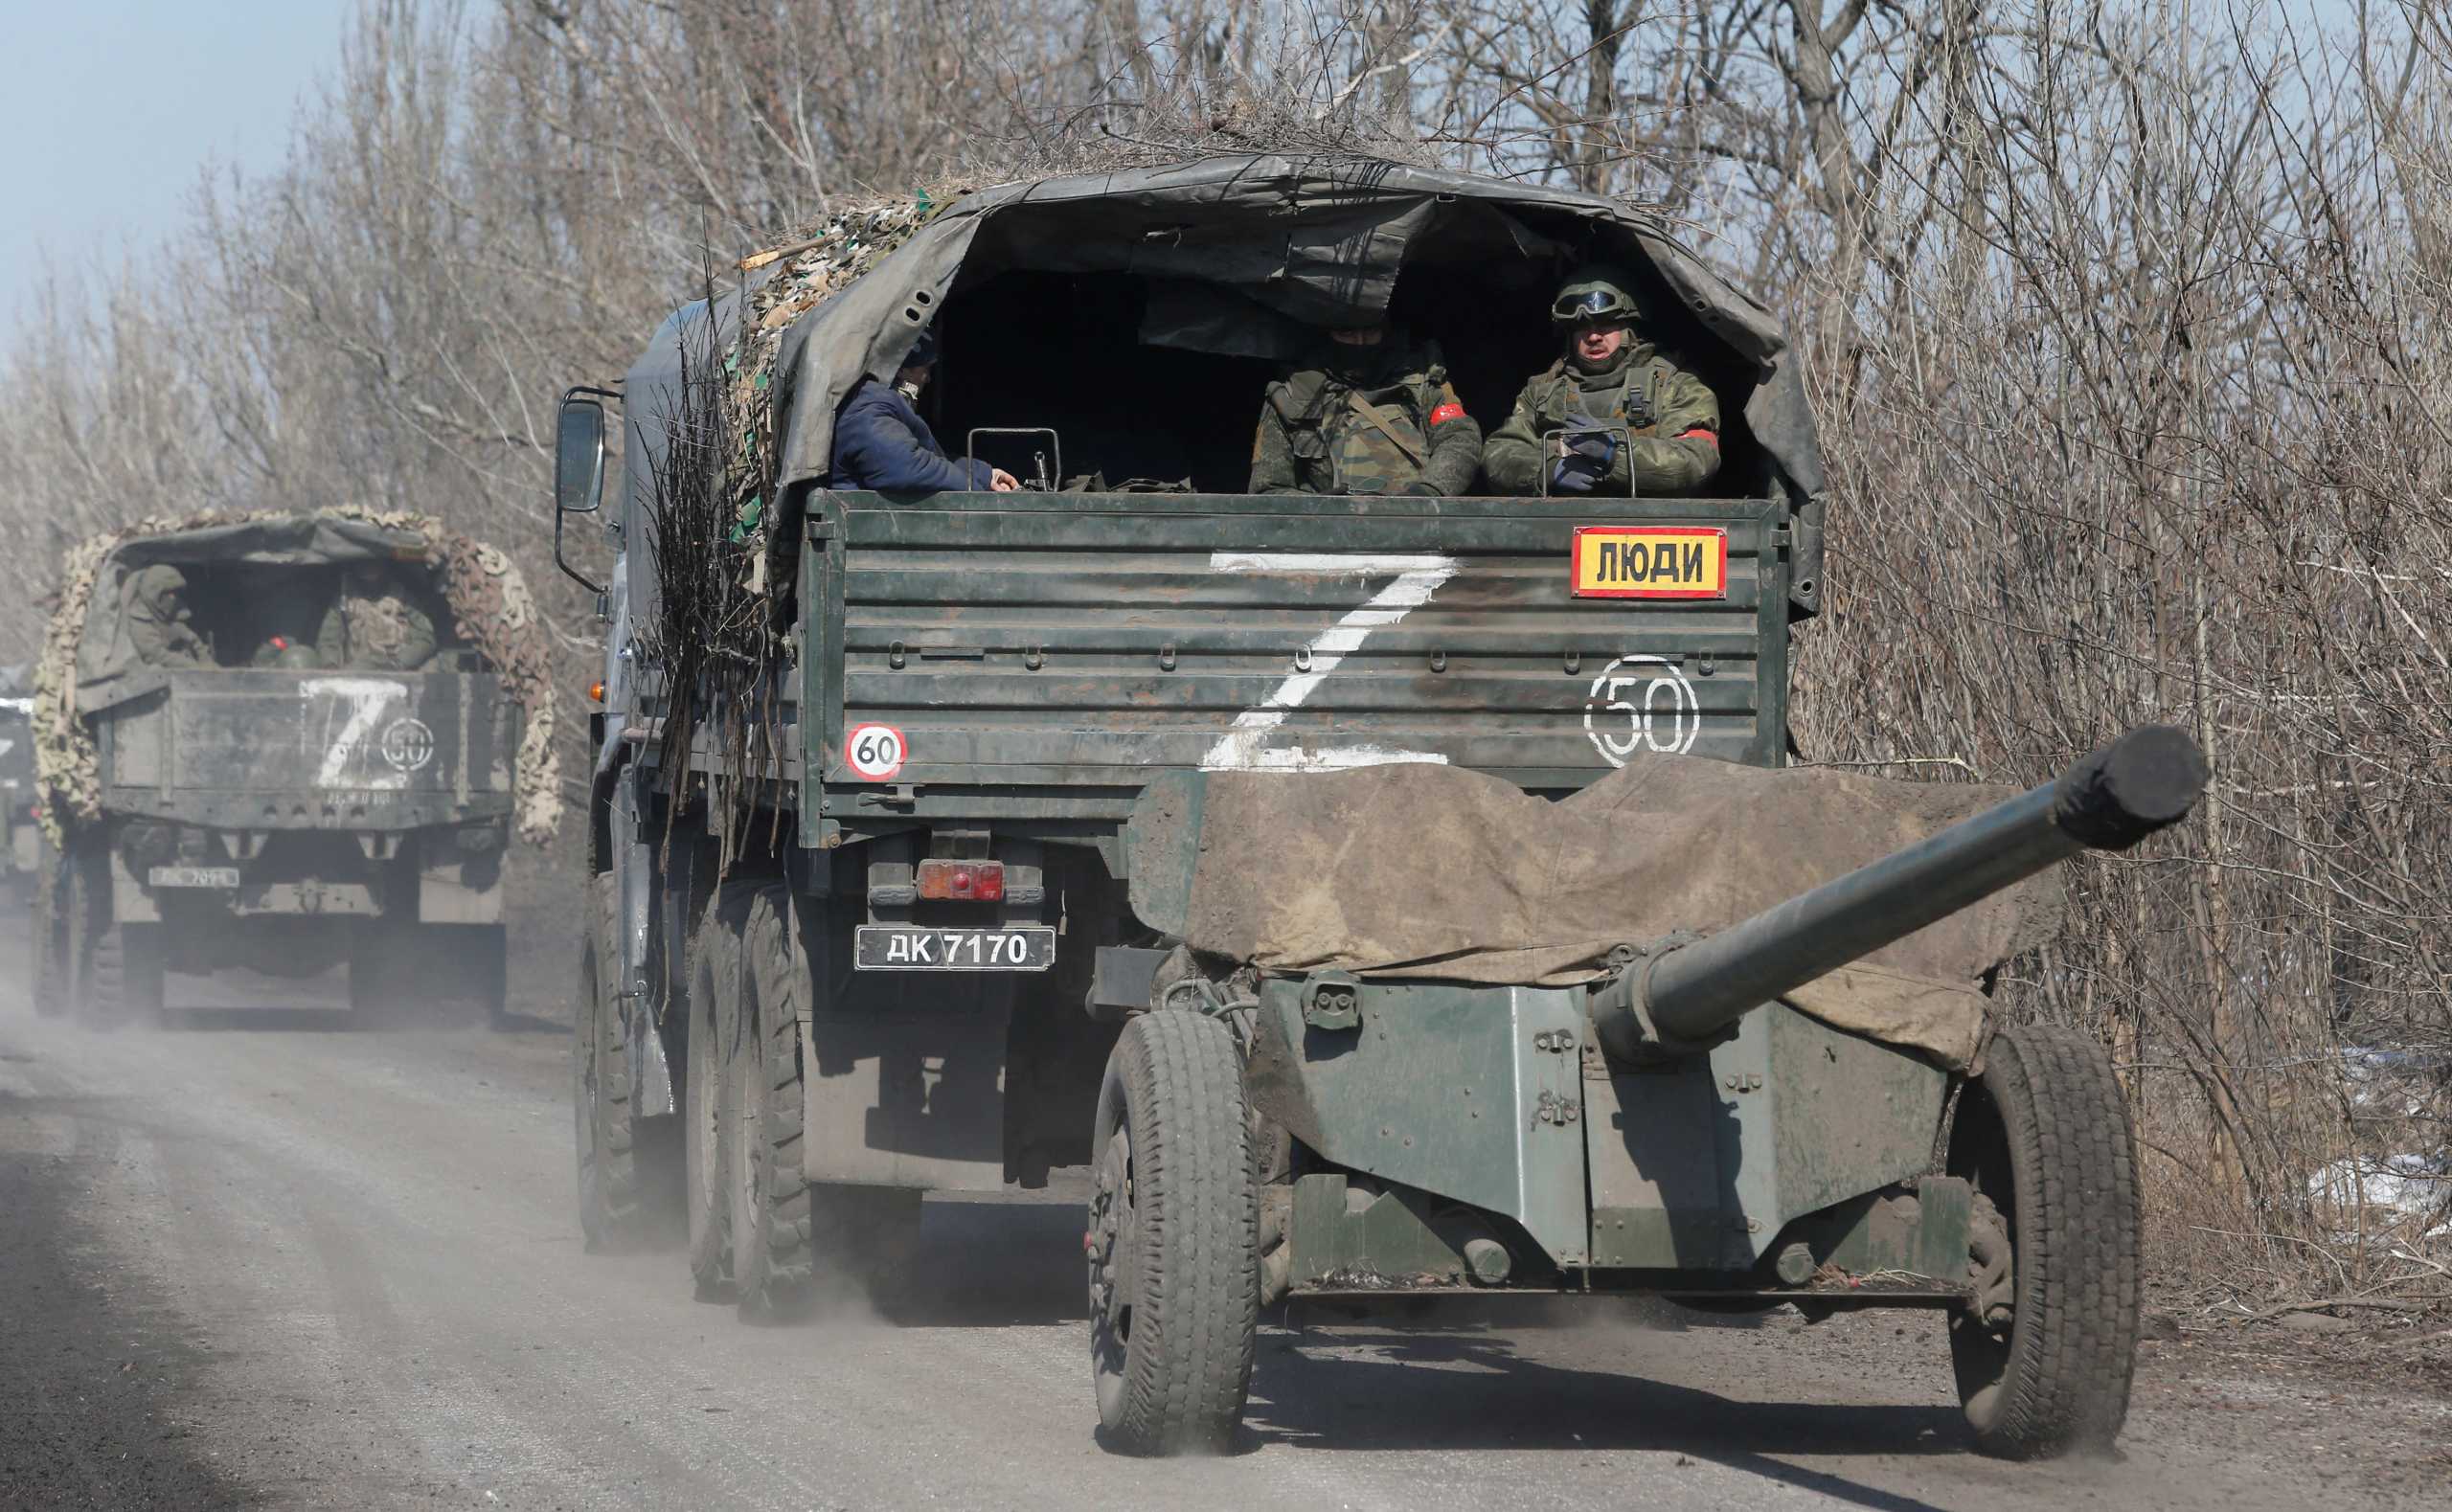 Ουκρανία: Στόχος της νέας ρωσικής επίθεσης η κατάληψη του Ντονμπάς και η καταστροφή των ενόπλων δυνάμεών μας